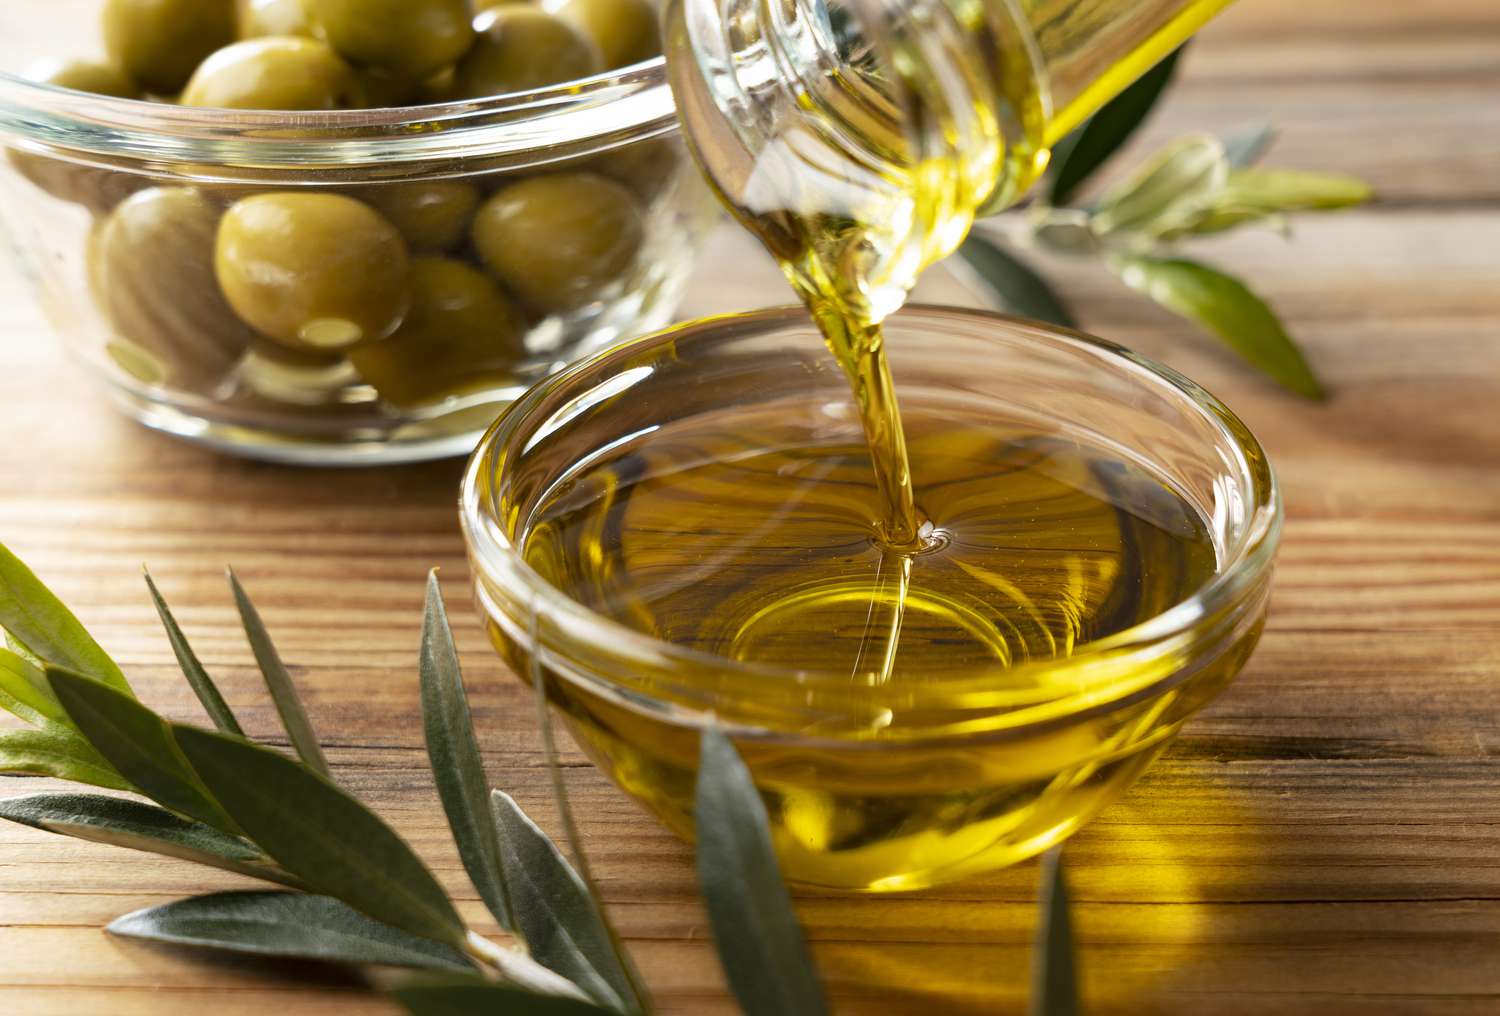 Vendi evropian heq taksat ndaj vajit të ullirit për të reduktuar çmimin ‘e papërballueshëm’!